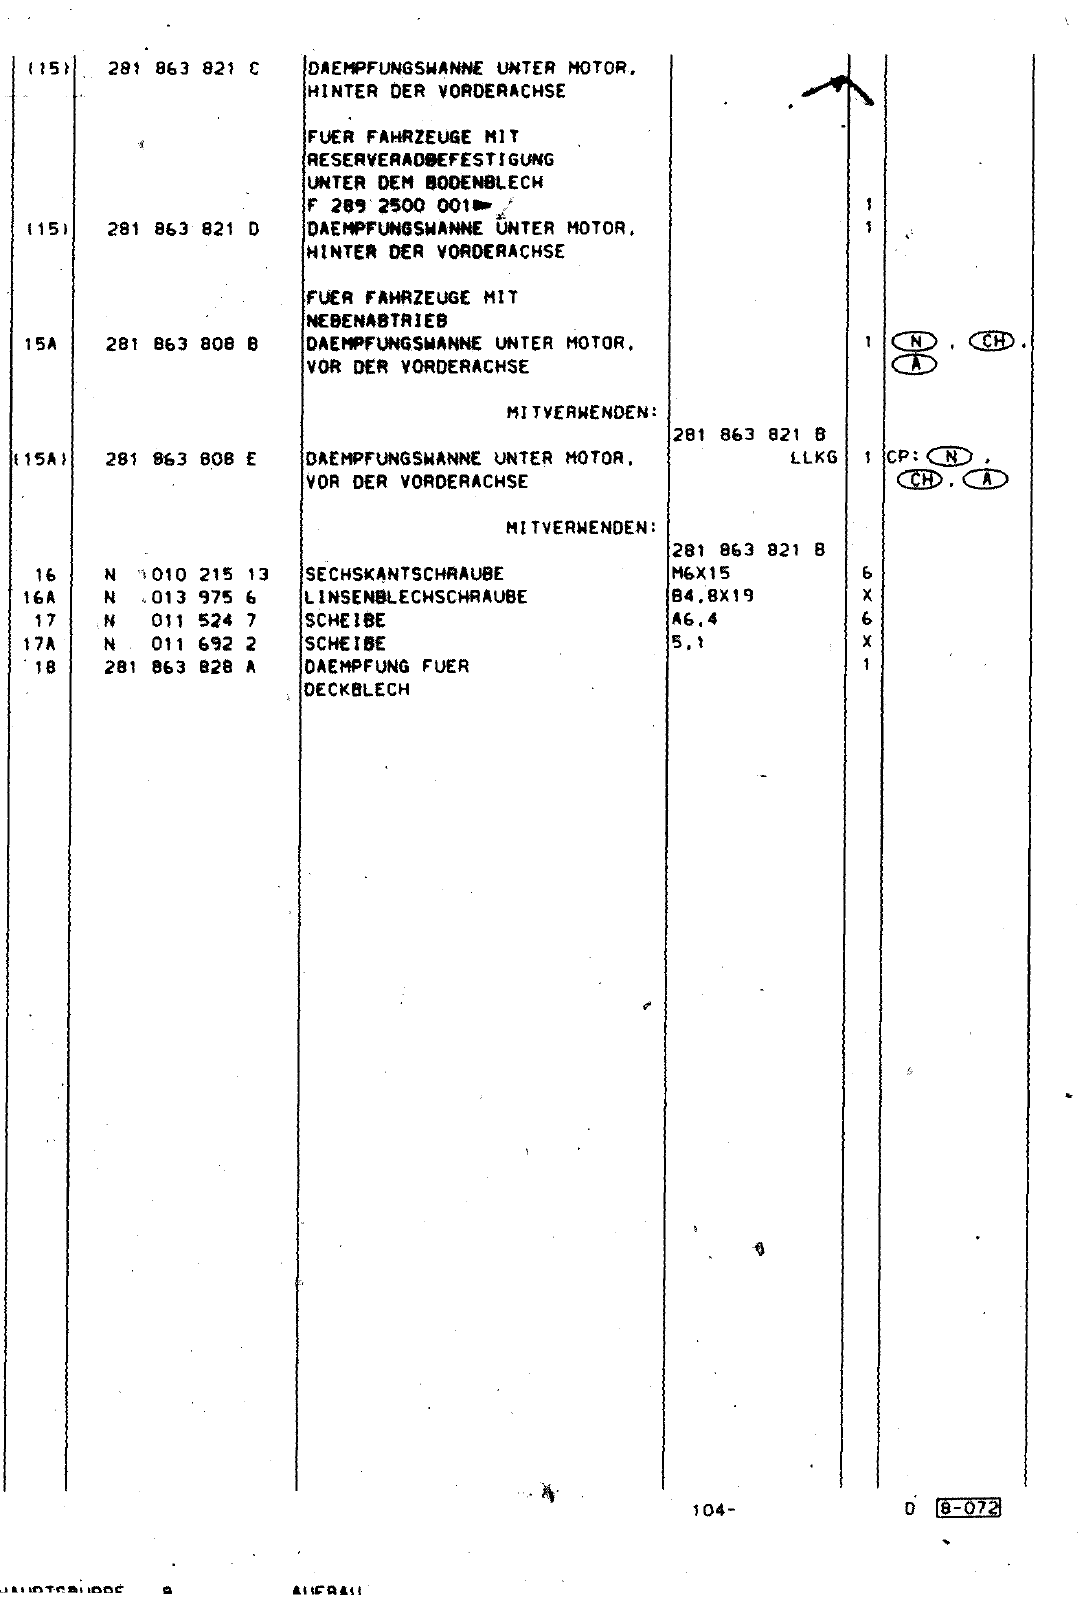 Vorschau Lastentransporter LT F-28-D-007 273 Seite 574